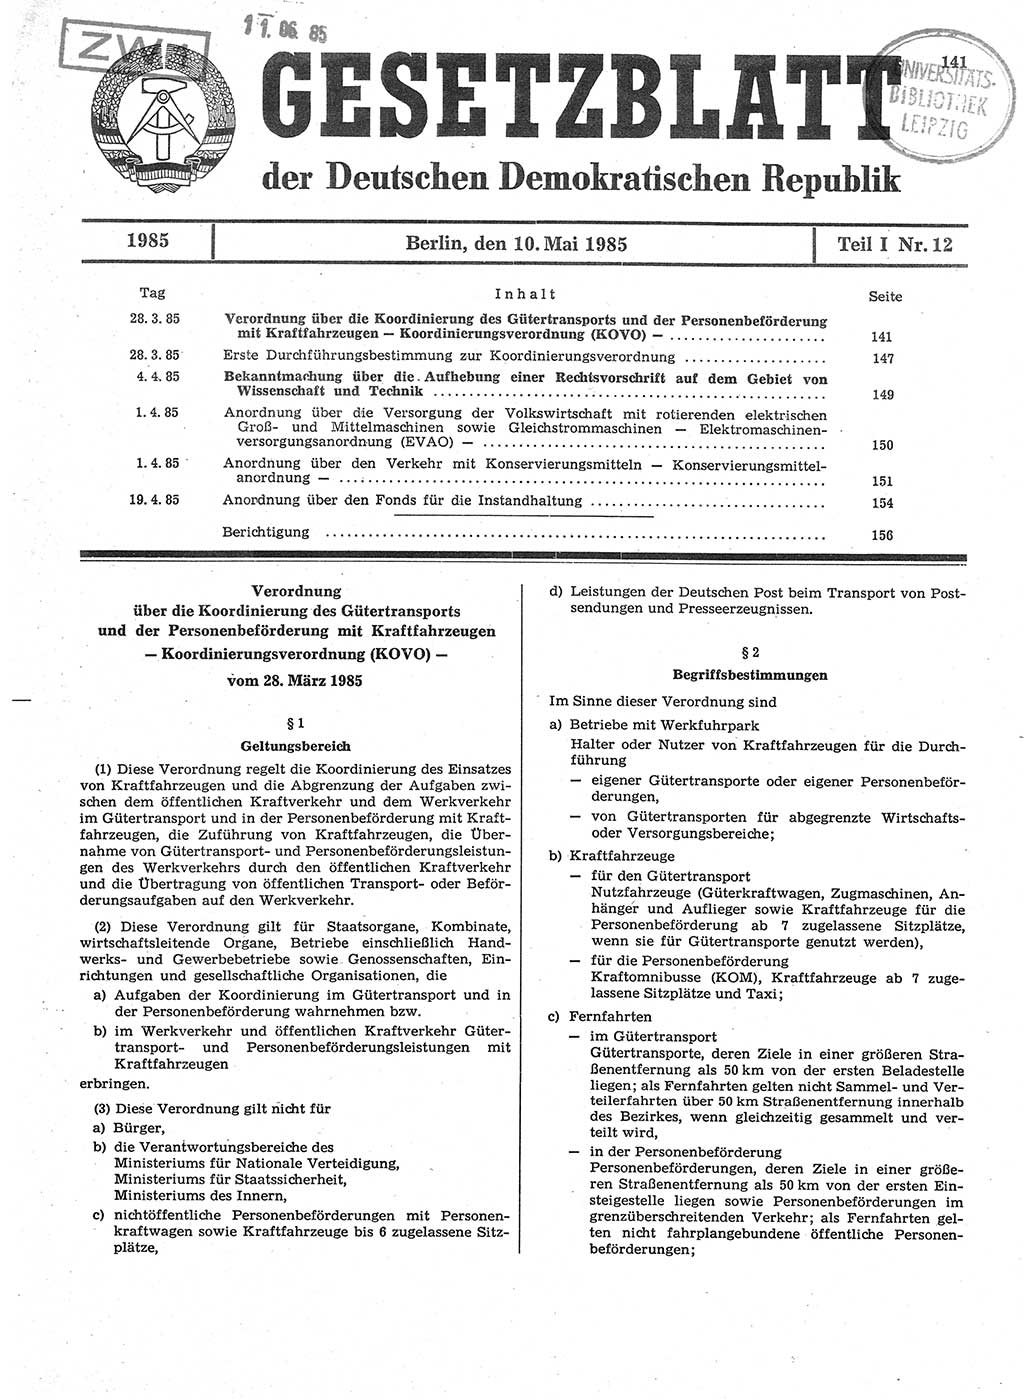 Gesetzblatt (GBl.) der Deutschen Demokratischen Republik (DDR) Teil Ⅰ 1985, Seite 141 (GBl. DDR Ⅰ 1985, S. 141)